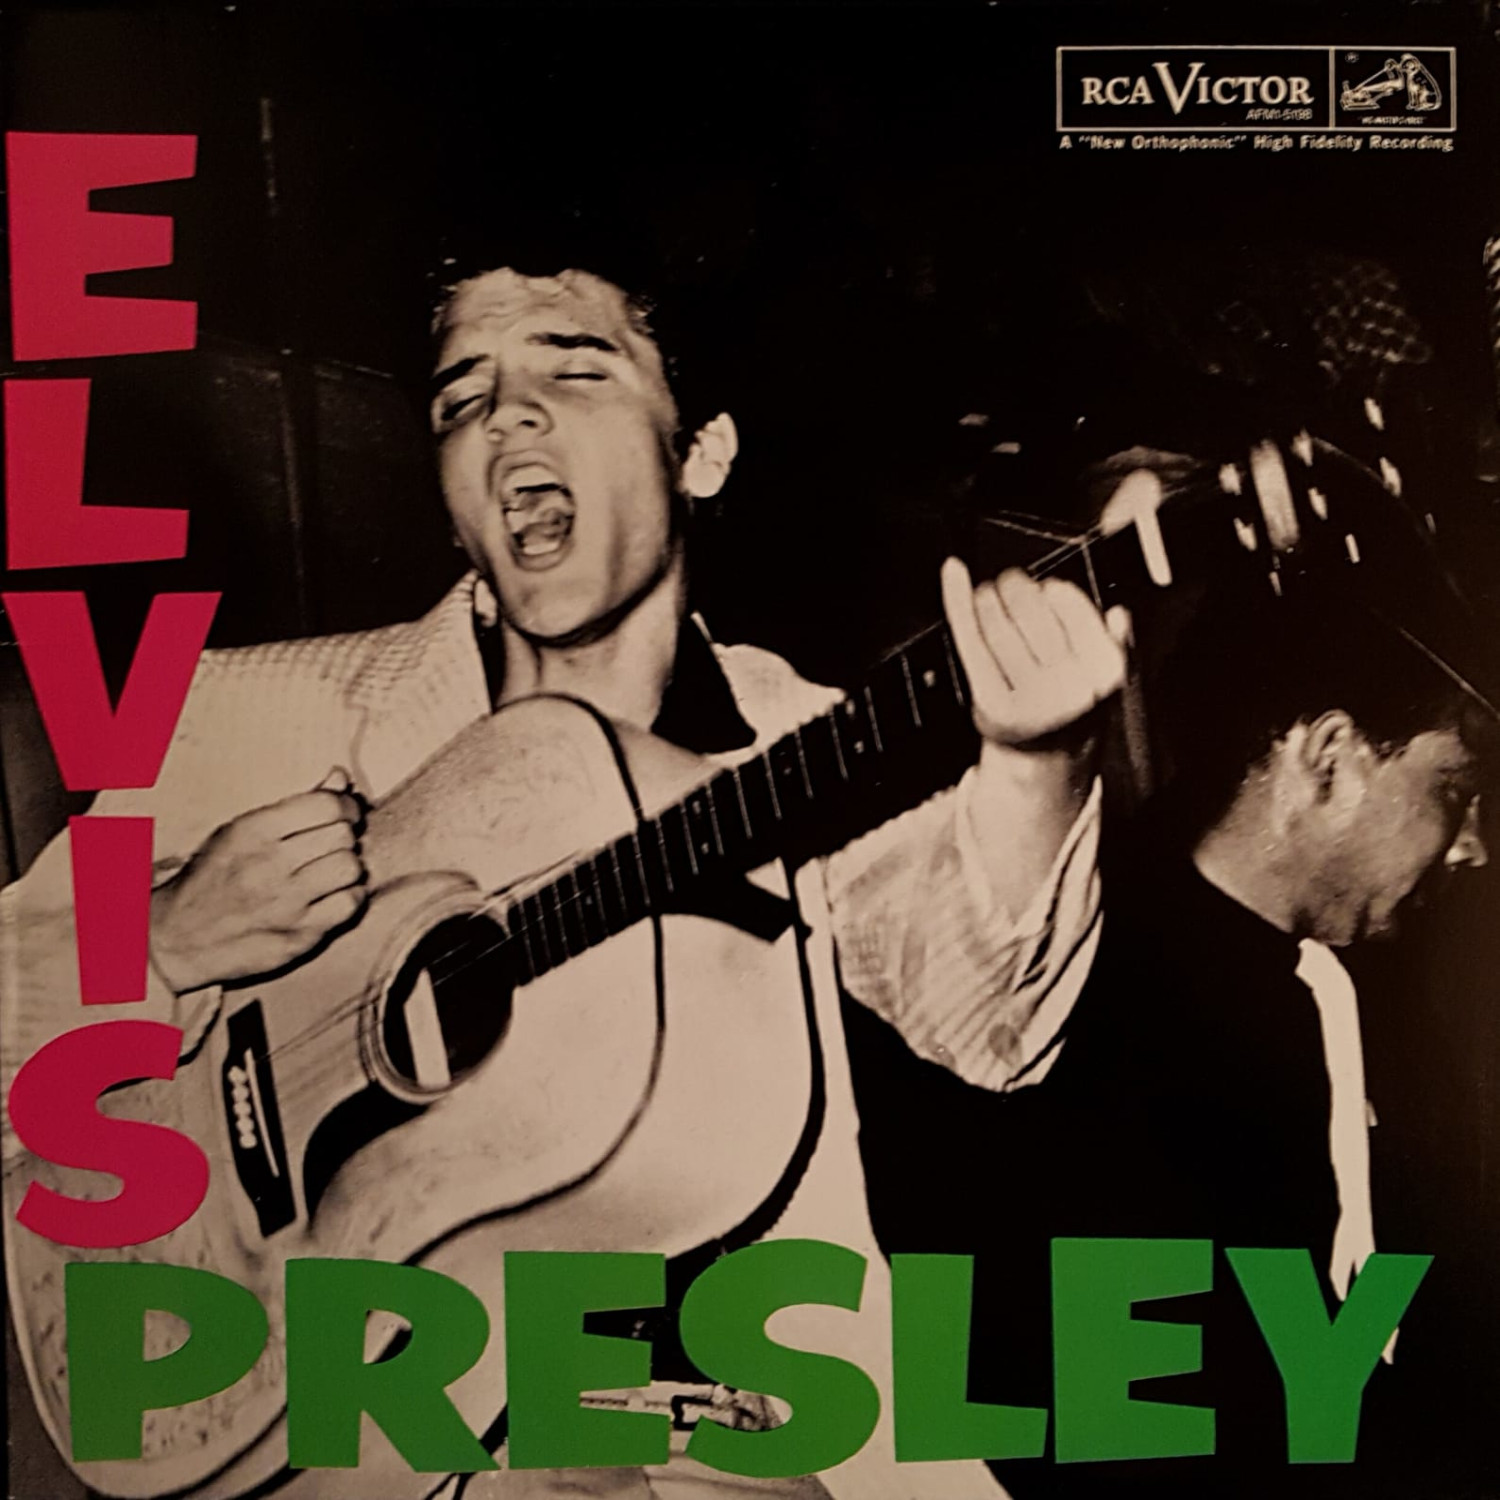 Presley - ELVIS PRESLEY Afm1-5198-85-bh8jad